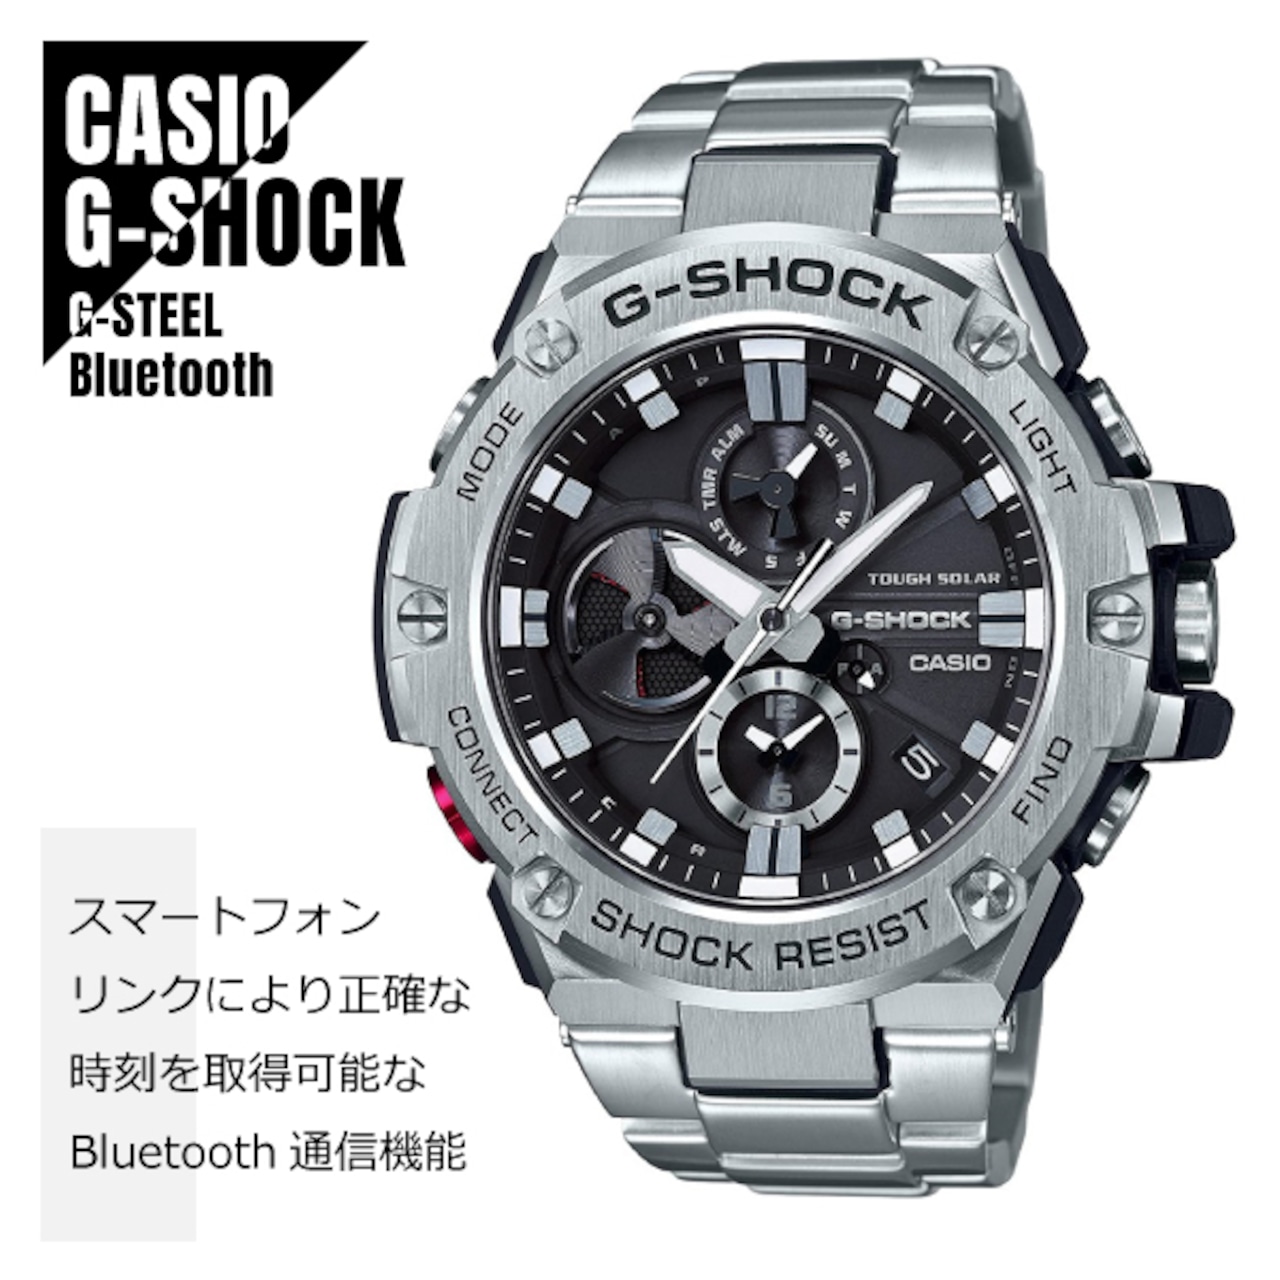 CASIO カシオ G-SHOCK ジーショック G-STEEL Gスチール GST-B100D-1A ブラック×シルバー Bluetooth搭載 タフネス クロノグラフ 腕時計 メンズ